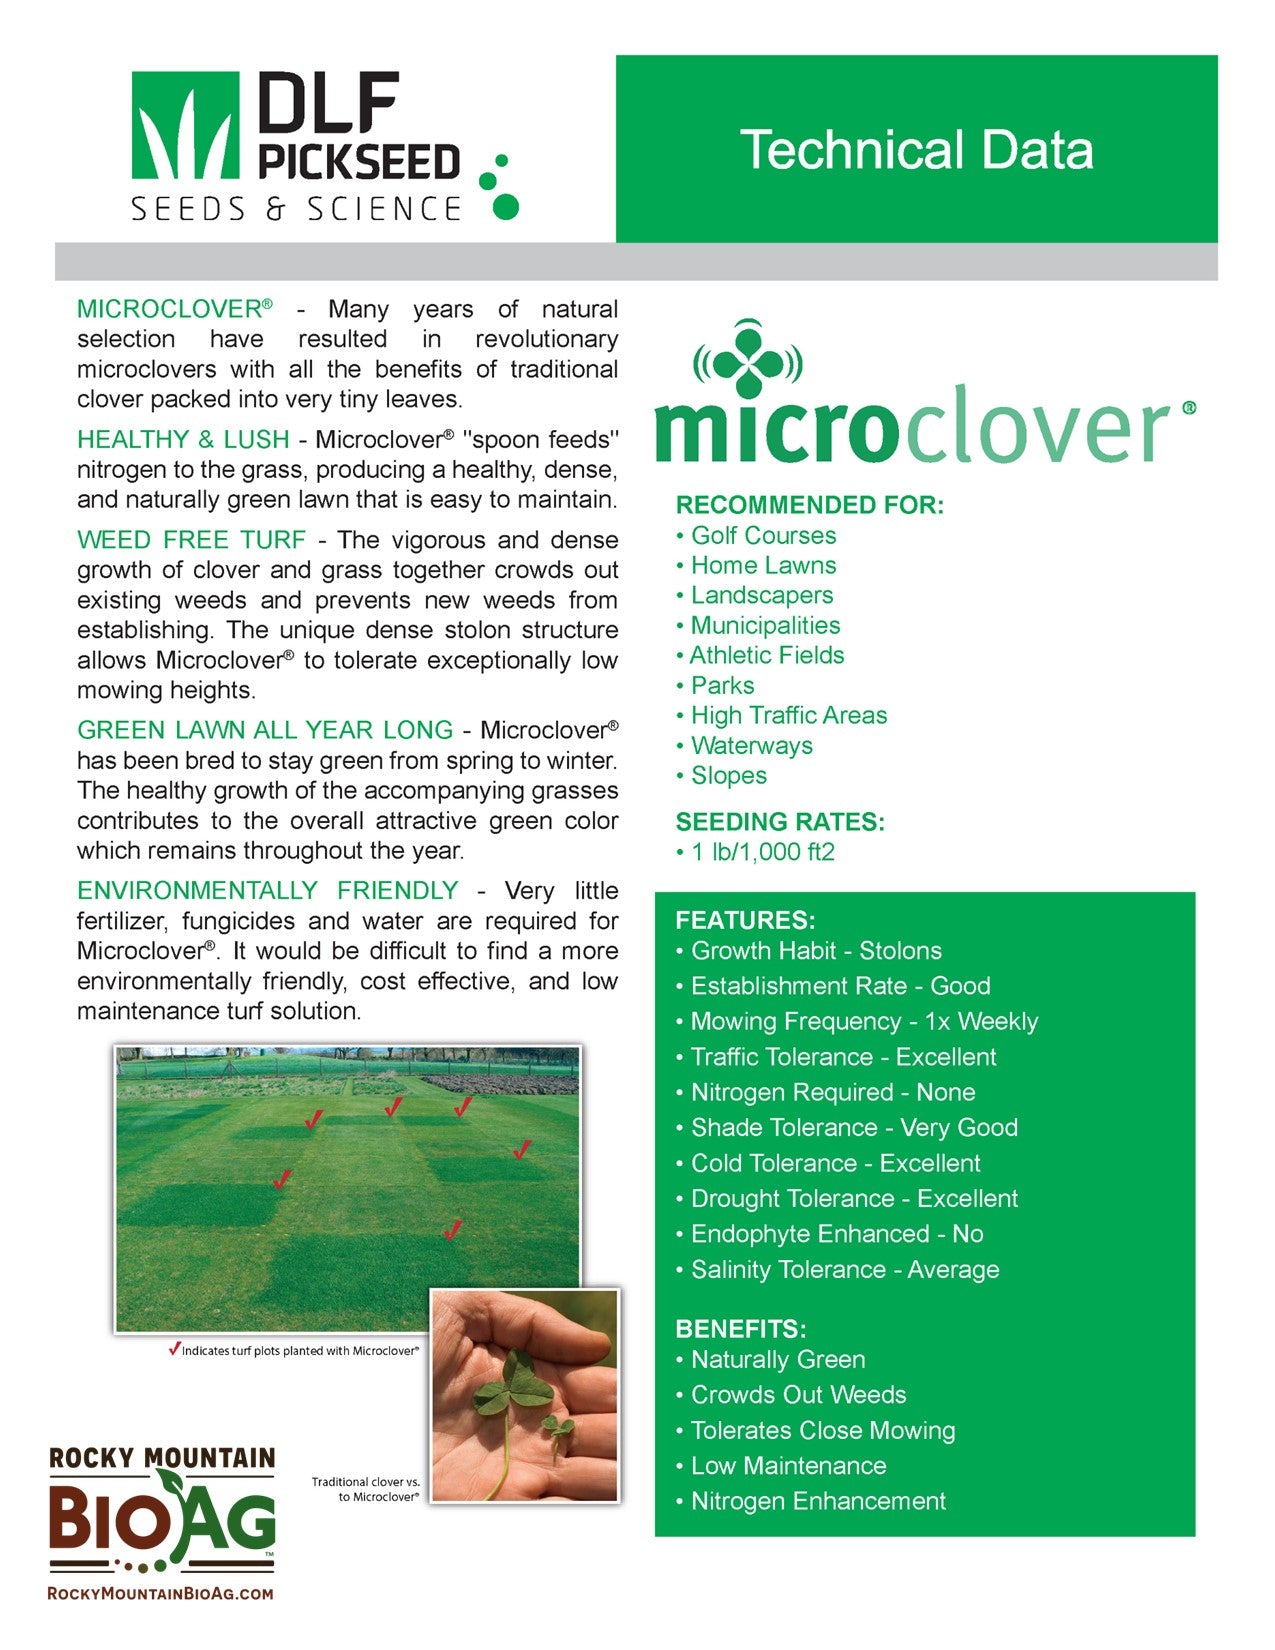 DLF Micro Clover Grass Seeds Technical Data